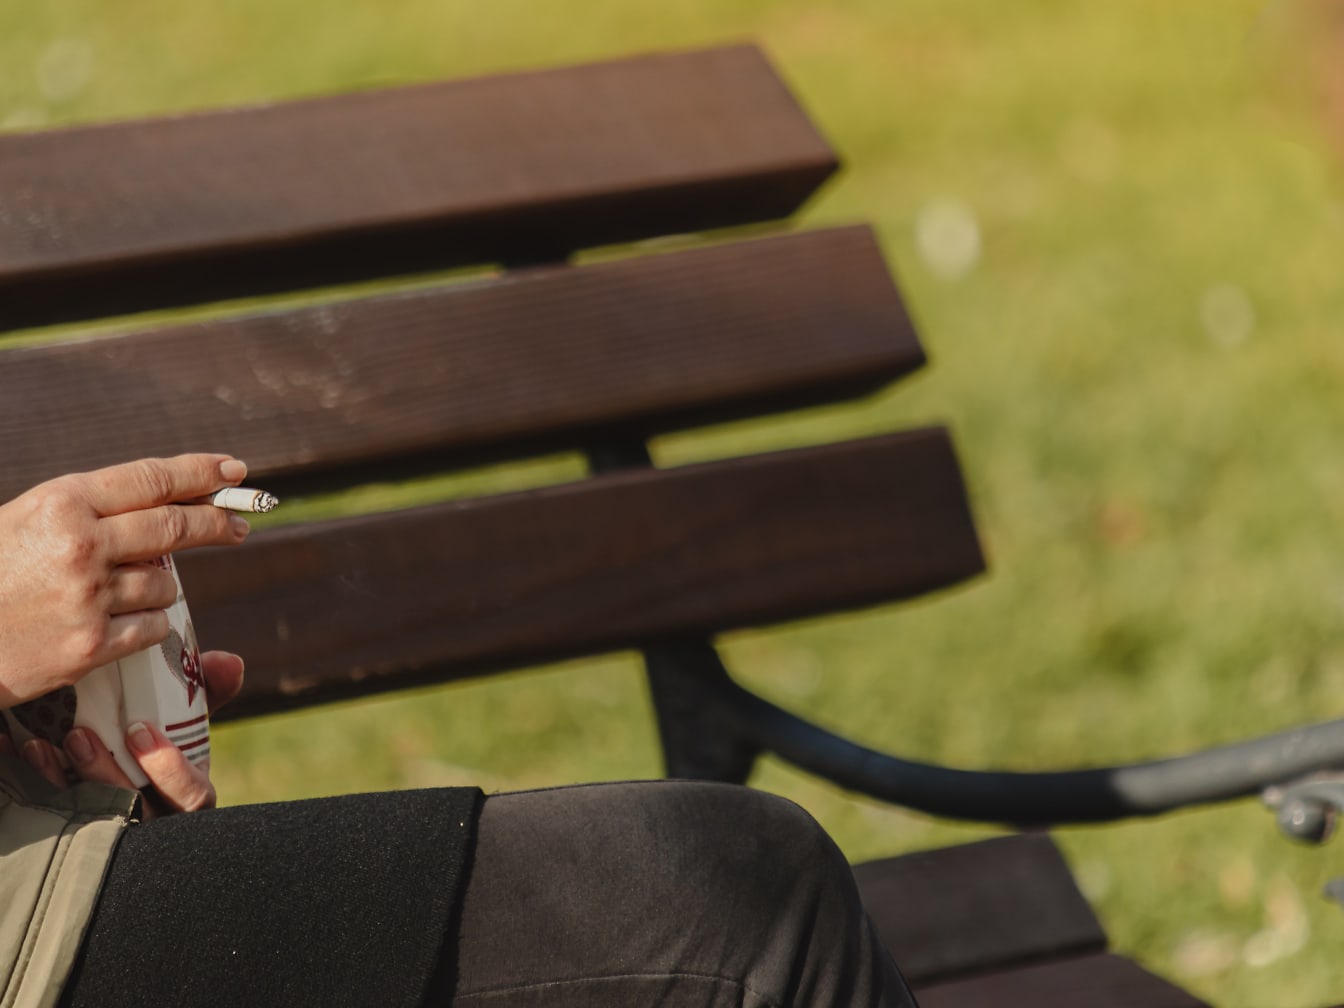 머그컵과 담배를 손에 들고 앉아있는 사람